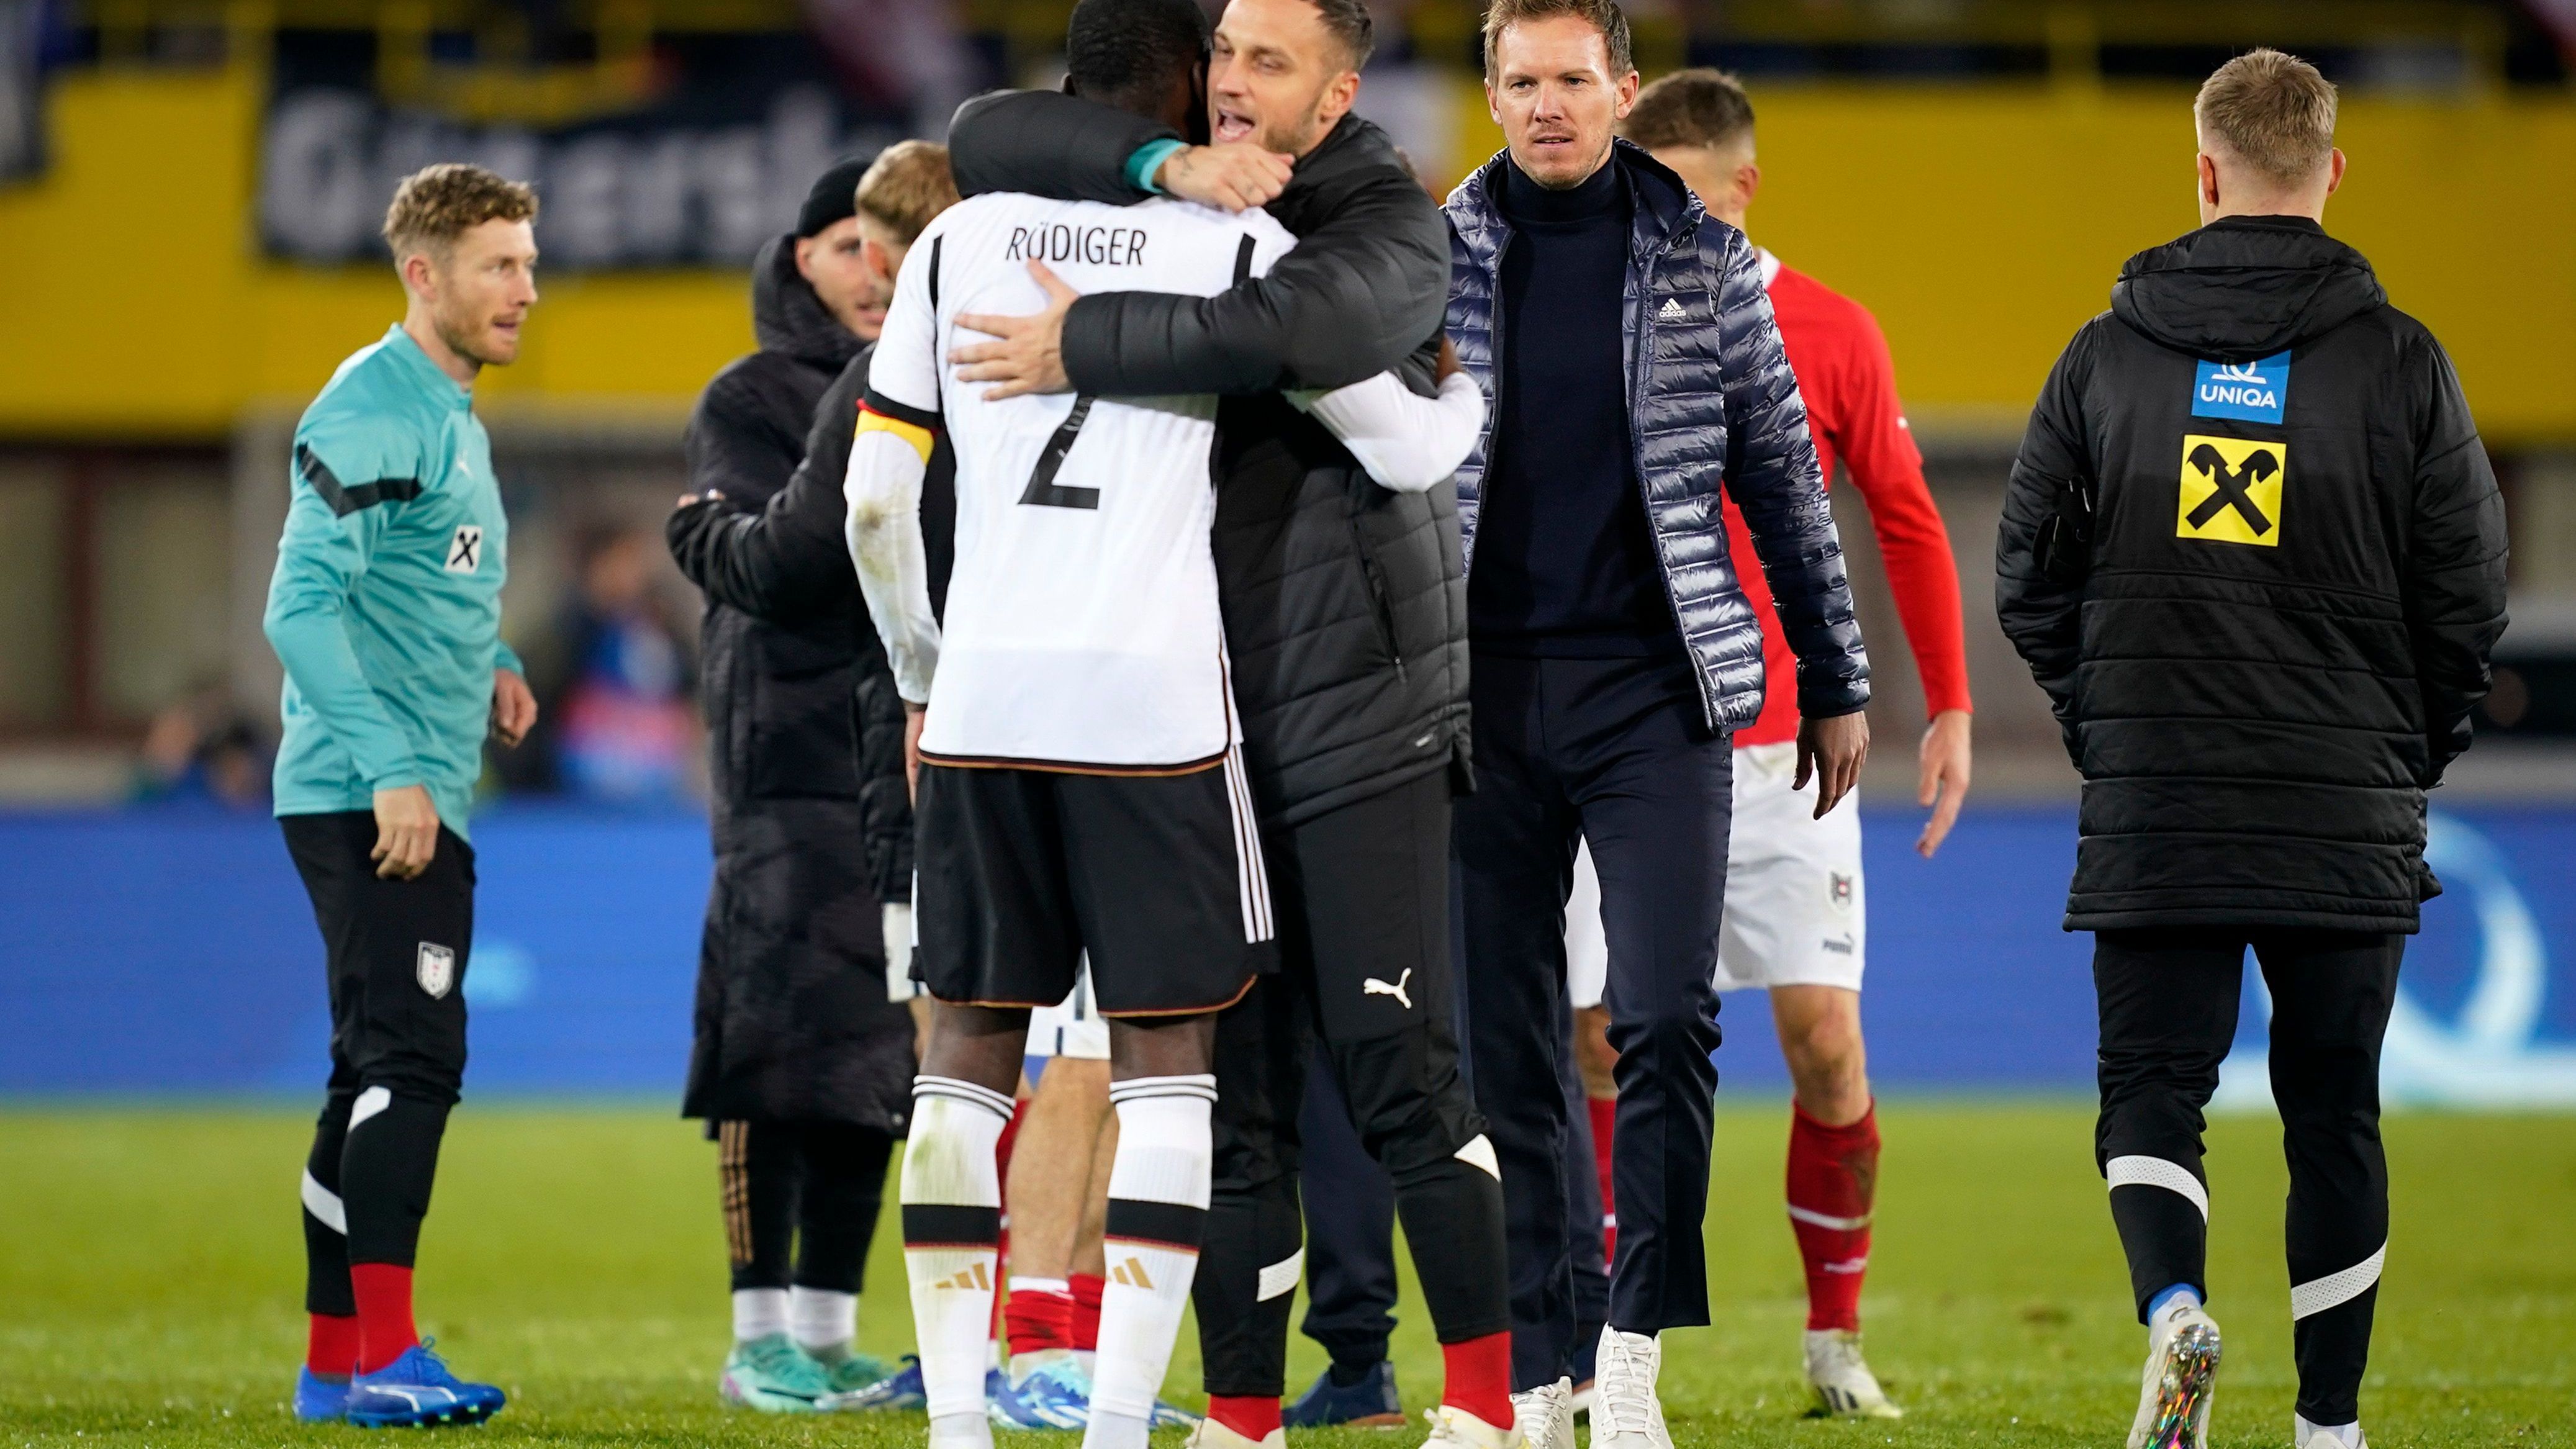 <strong>Süddeutsche Zeitung</strong><br>"Abbruchstimmung – Die deutsche Nationalmannschaft zieht mit einer irritierenden 0:2-Niederlage in Österreich ins EM-Jahr – und mit einer Debatte darüber, ob der neue Bundestrainer Nagelsmann seine Elf überfordert."